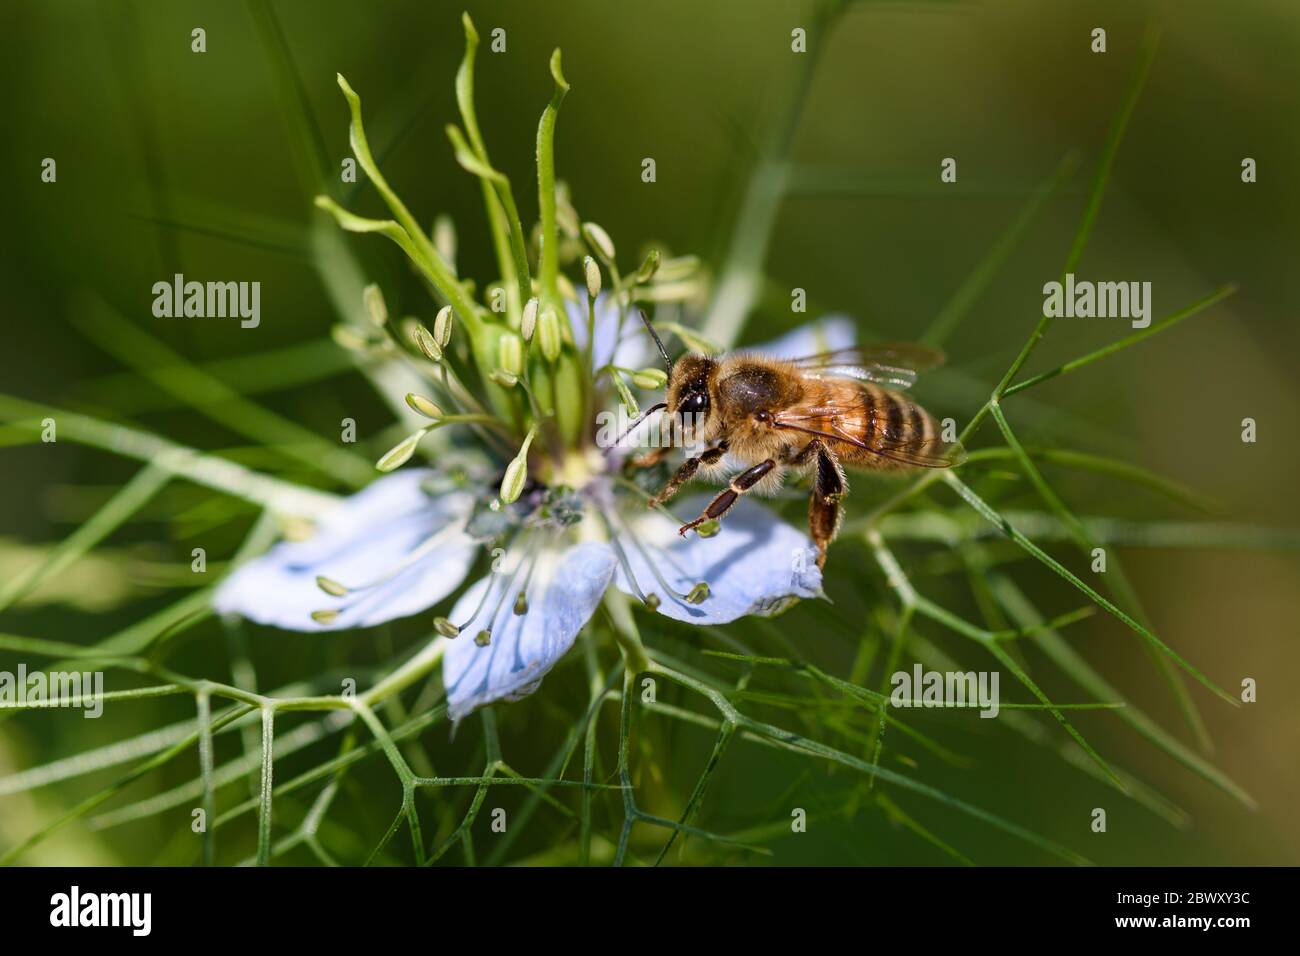 Vue rapprochée d'une abeille qui rassemble le nectar sur une fleur bleue. Joli bokeh en arrière-plan. Banque D'Images